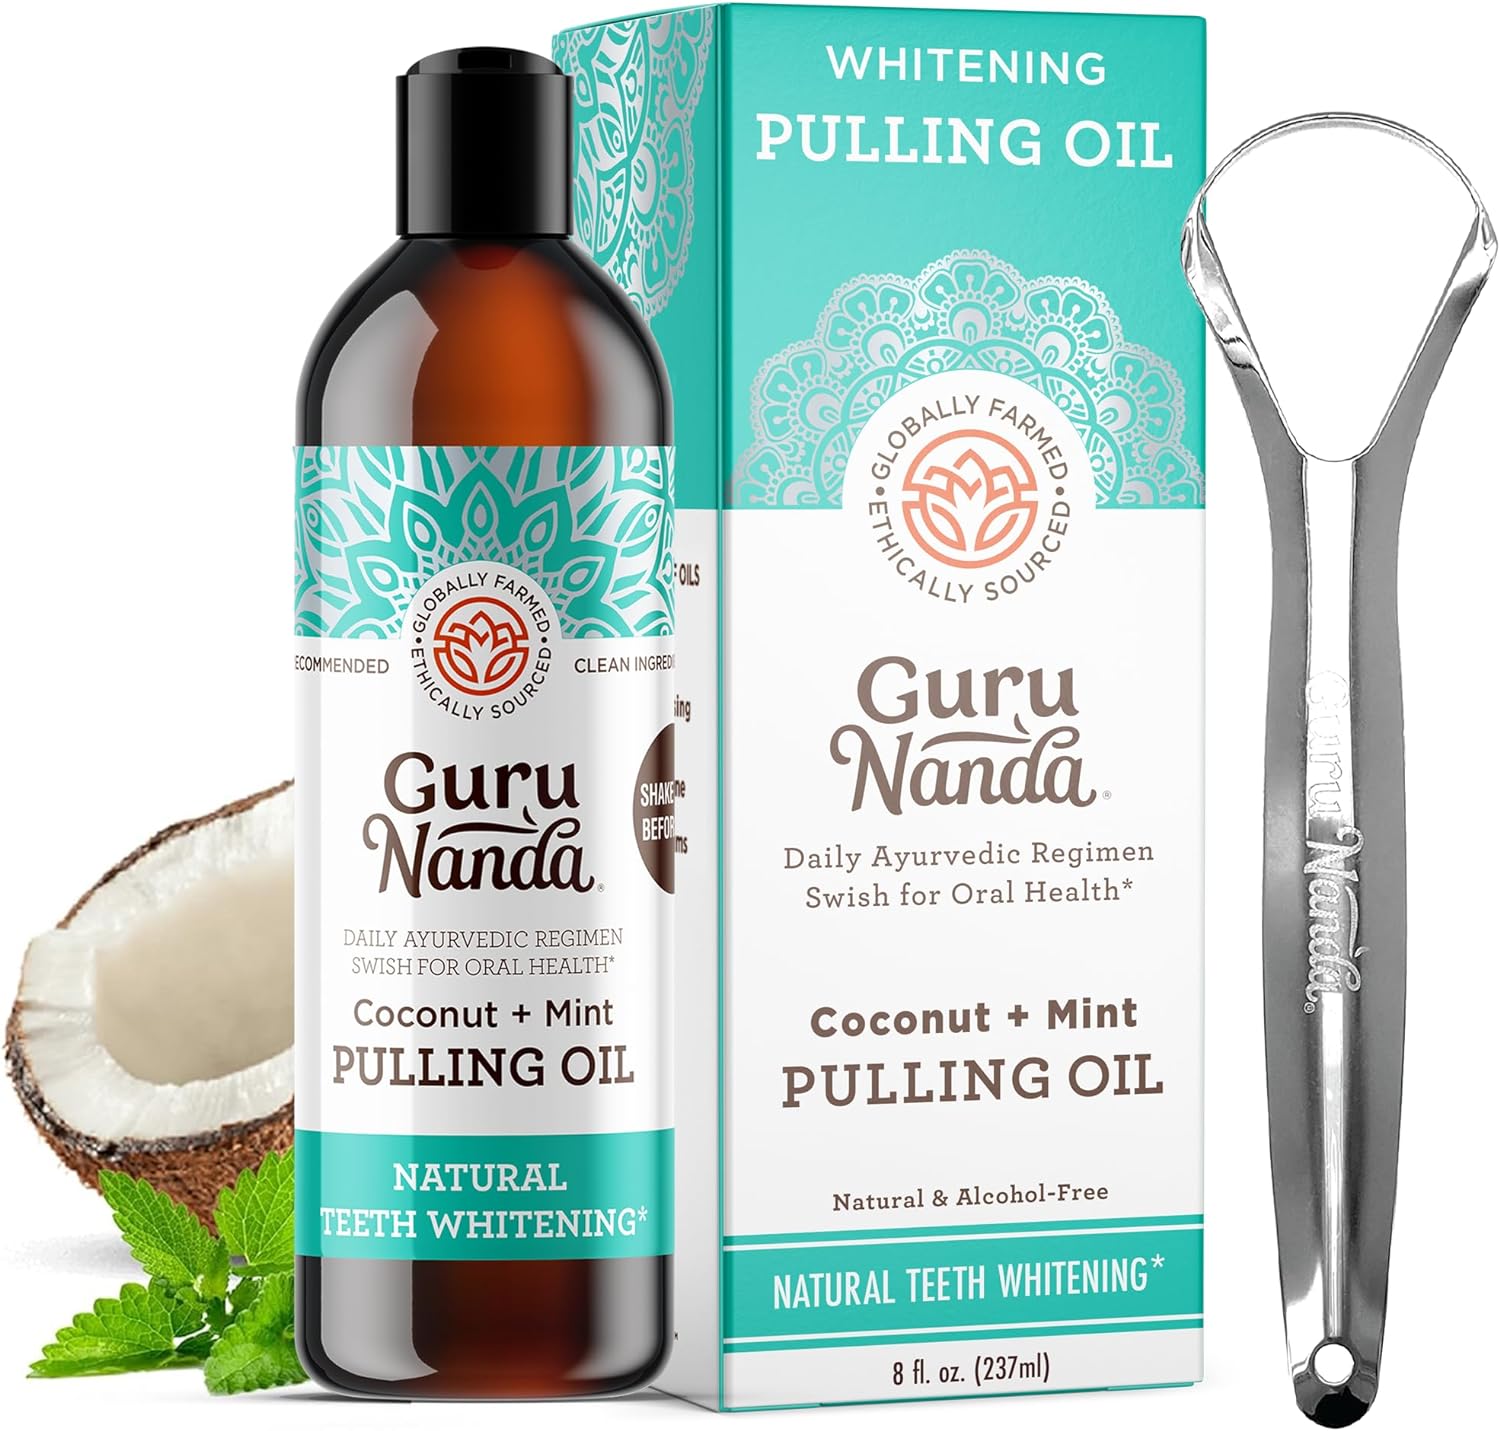 GuruNanda Coconut Oil Pulling Review